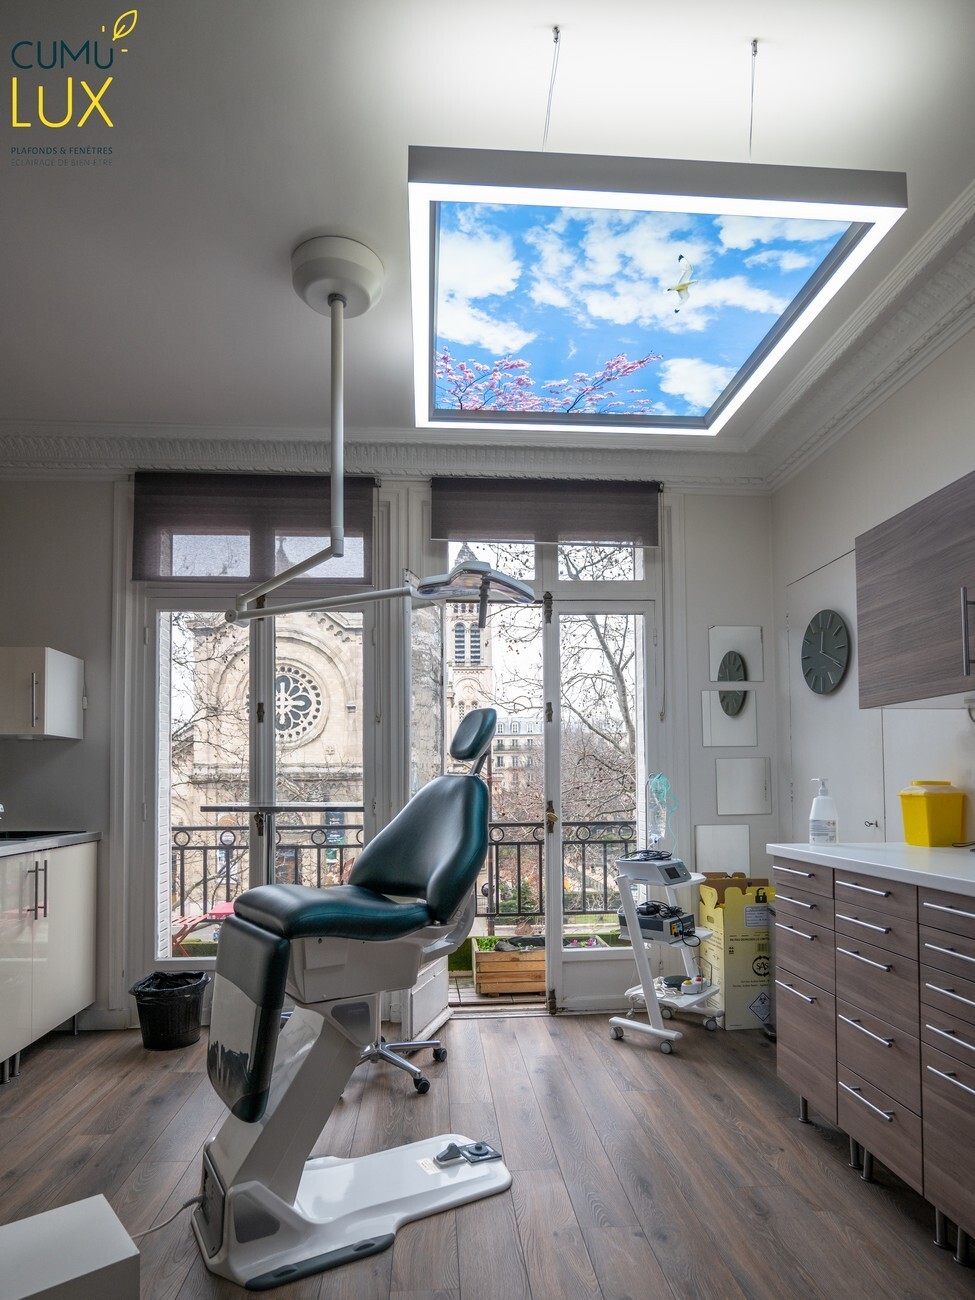 Cube Cumulux 120x120 cm, pour apporter plus de lumière et de confort dans une salle de consultation d'un cabinet dentaire.